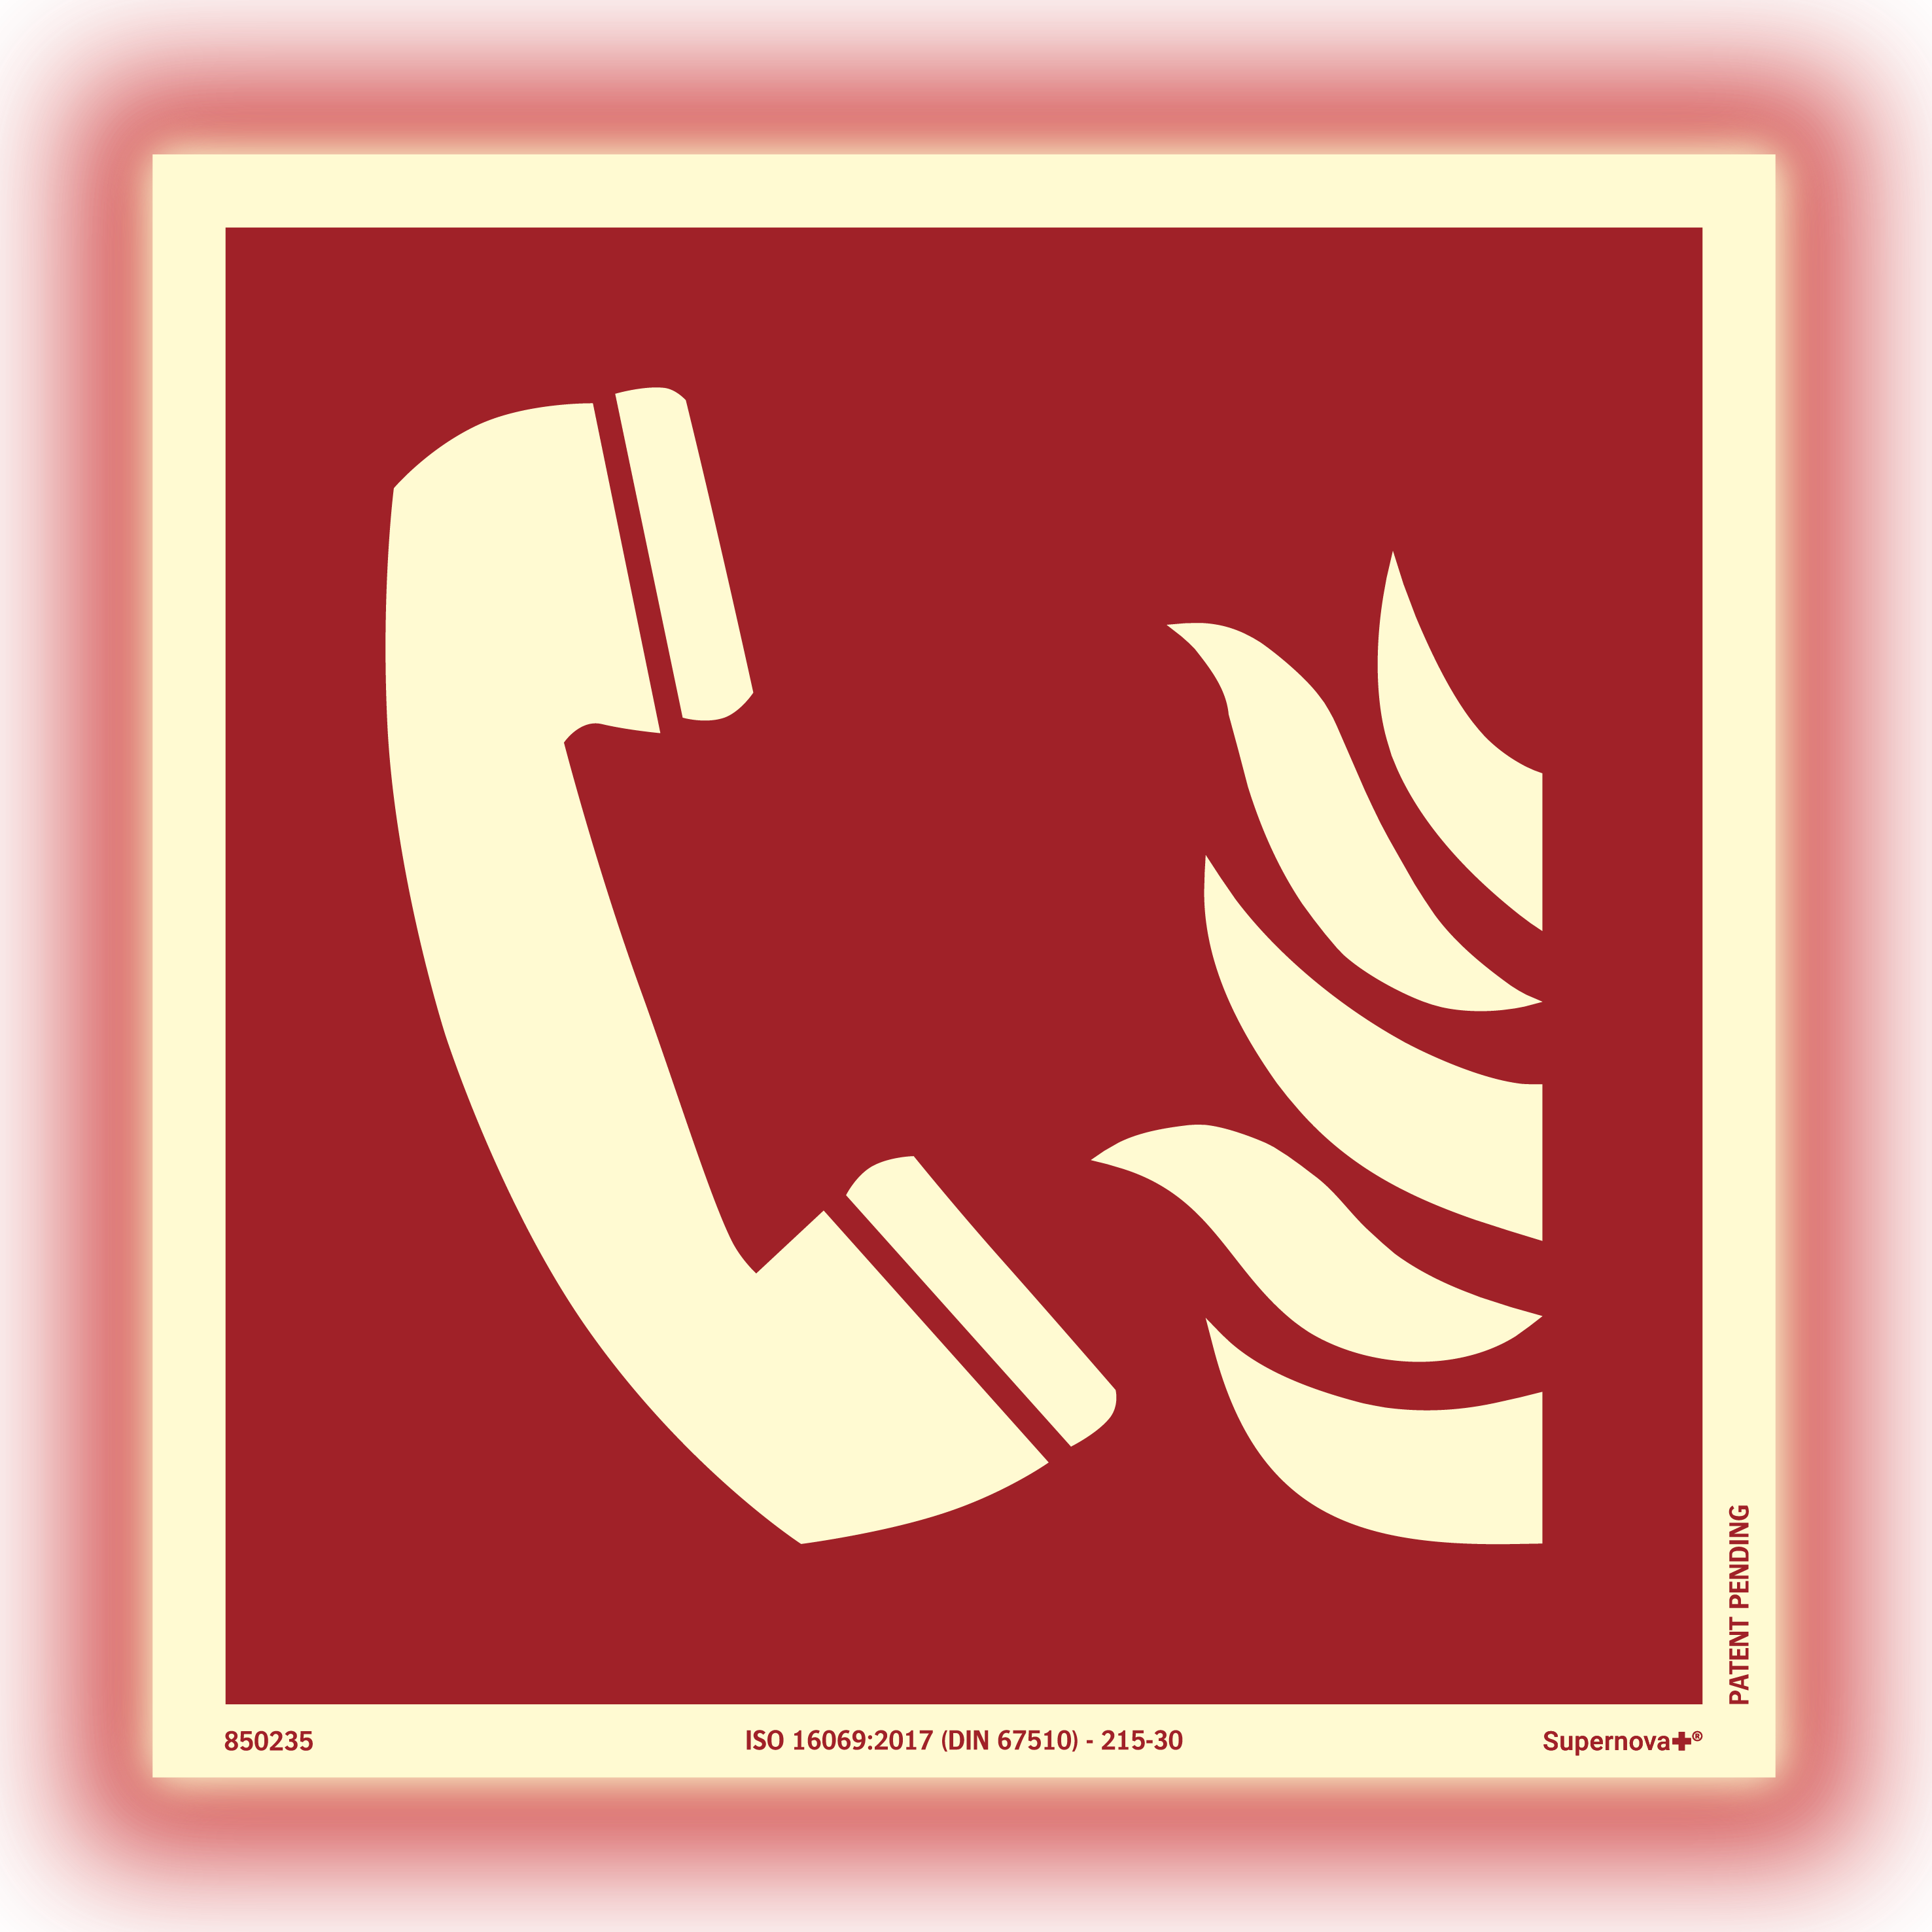 Supernova+® Téléphone pour les urgences incendie